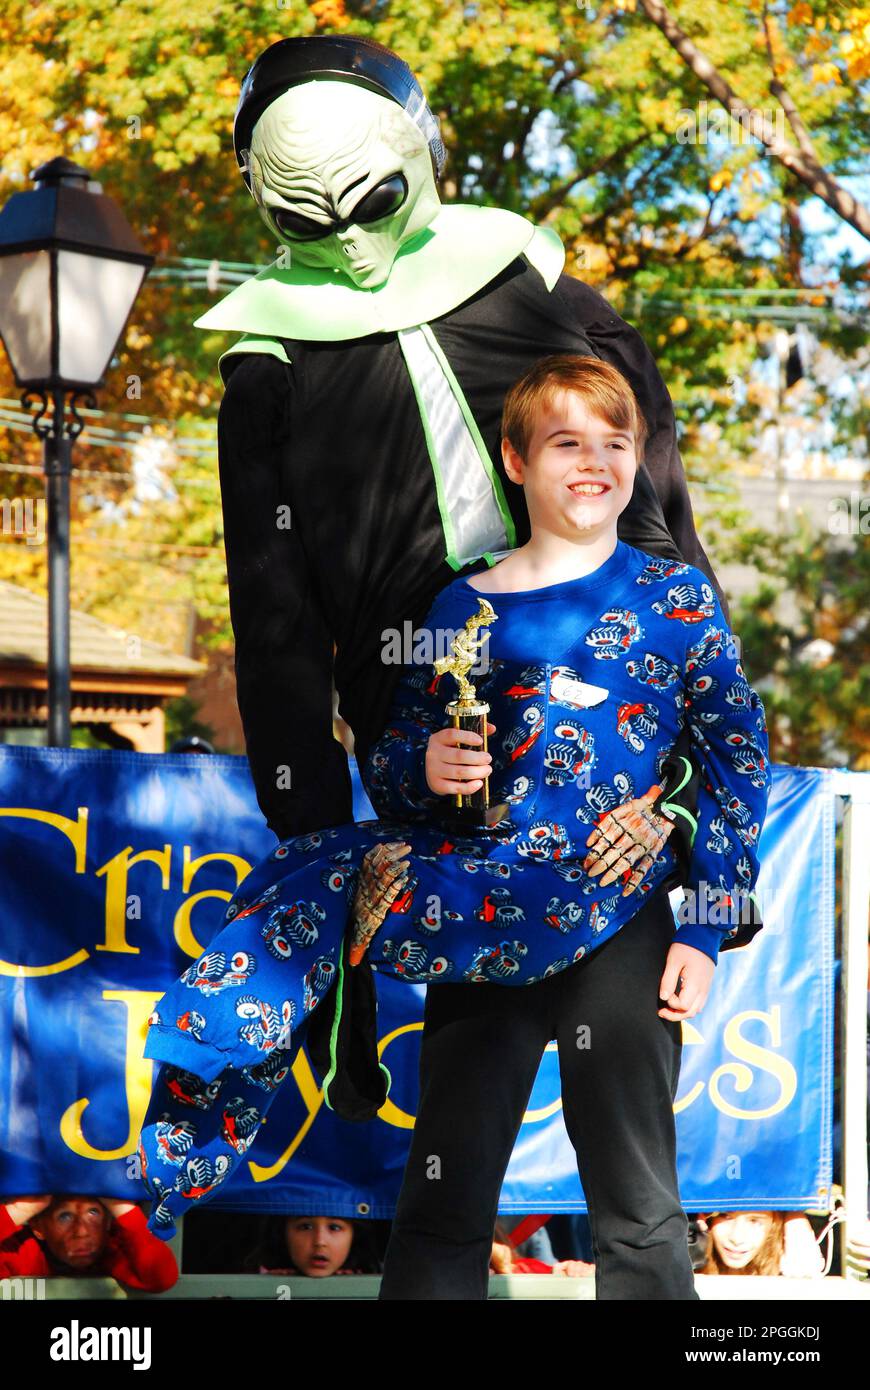 Un jeune enfant présente son trophée lors d'un concours de costumes d'Halloween, représentant un étranger transportant un enfant Banque D'Images